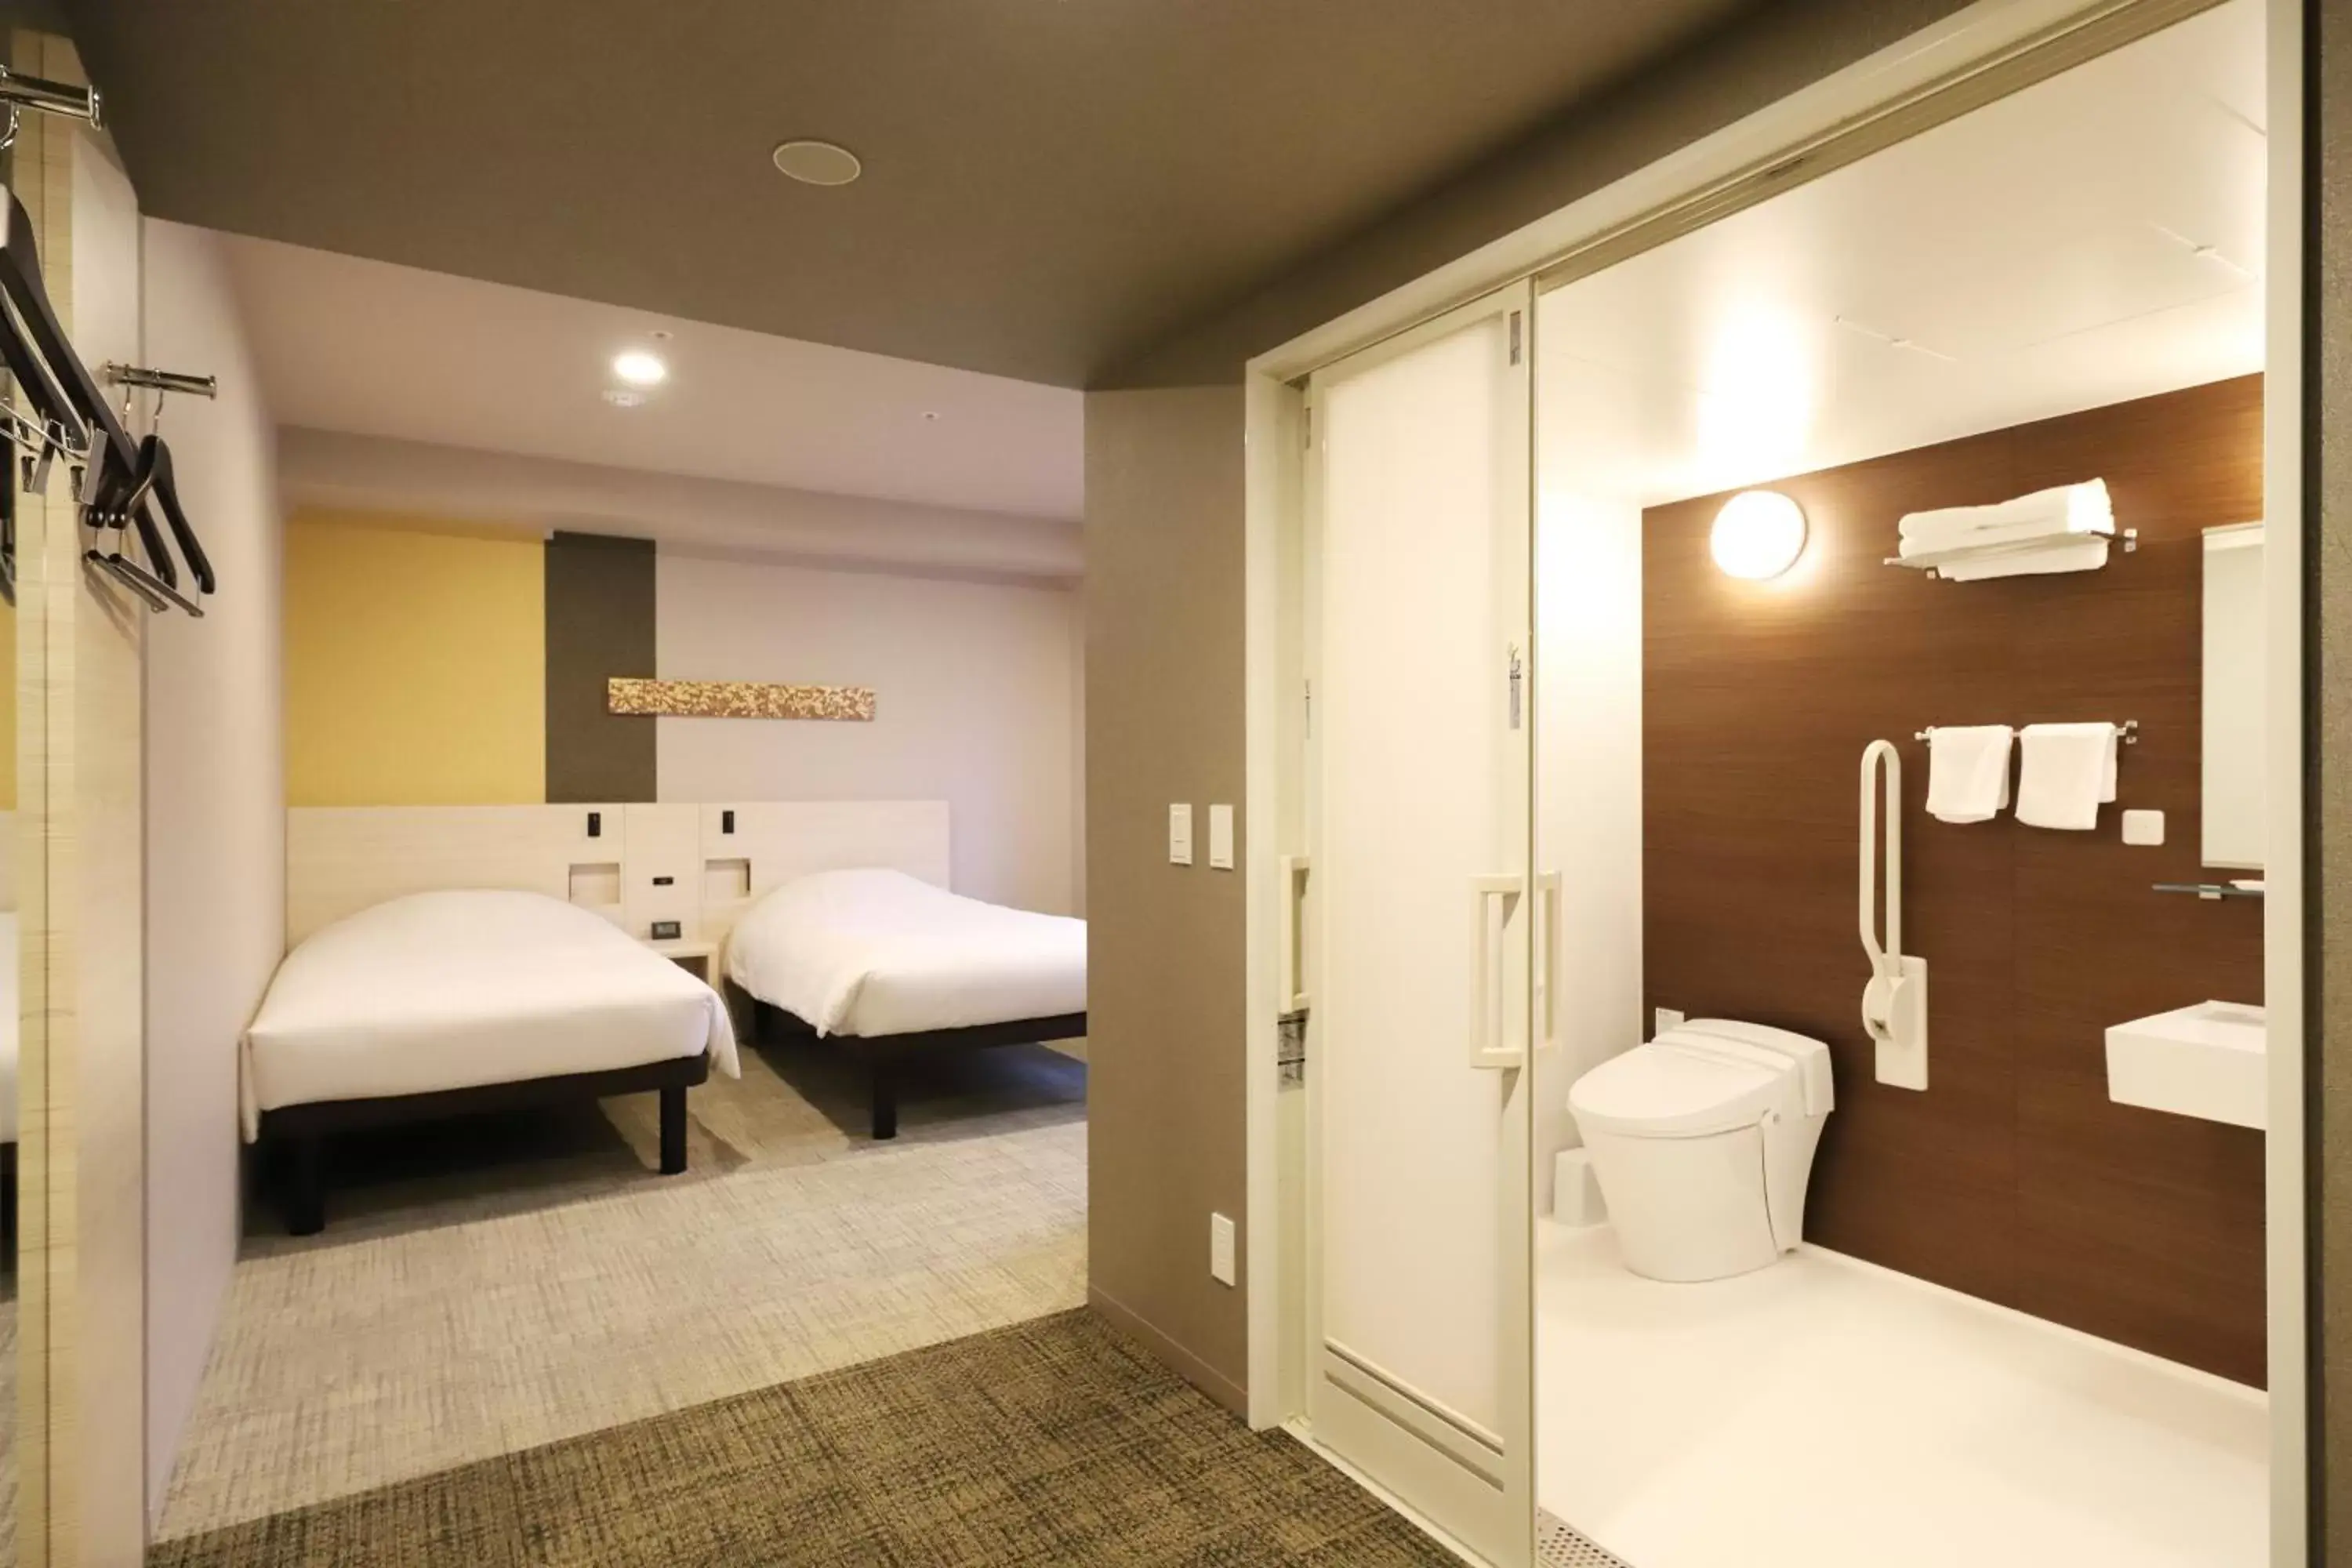 Bedroom, Bathroom in Smile Hotel Kanazawa Nishiguchi Ekimae